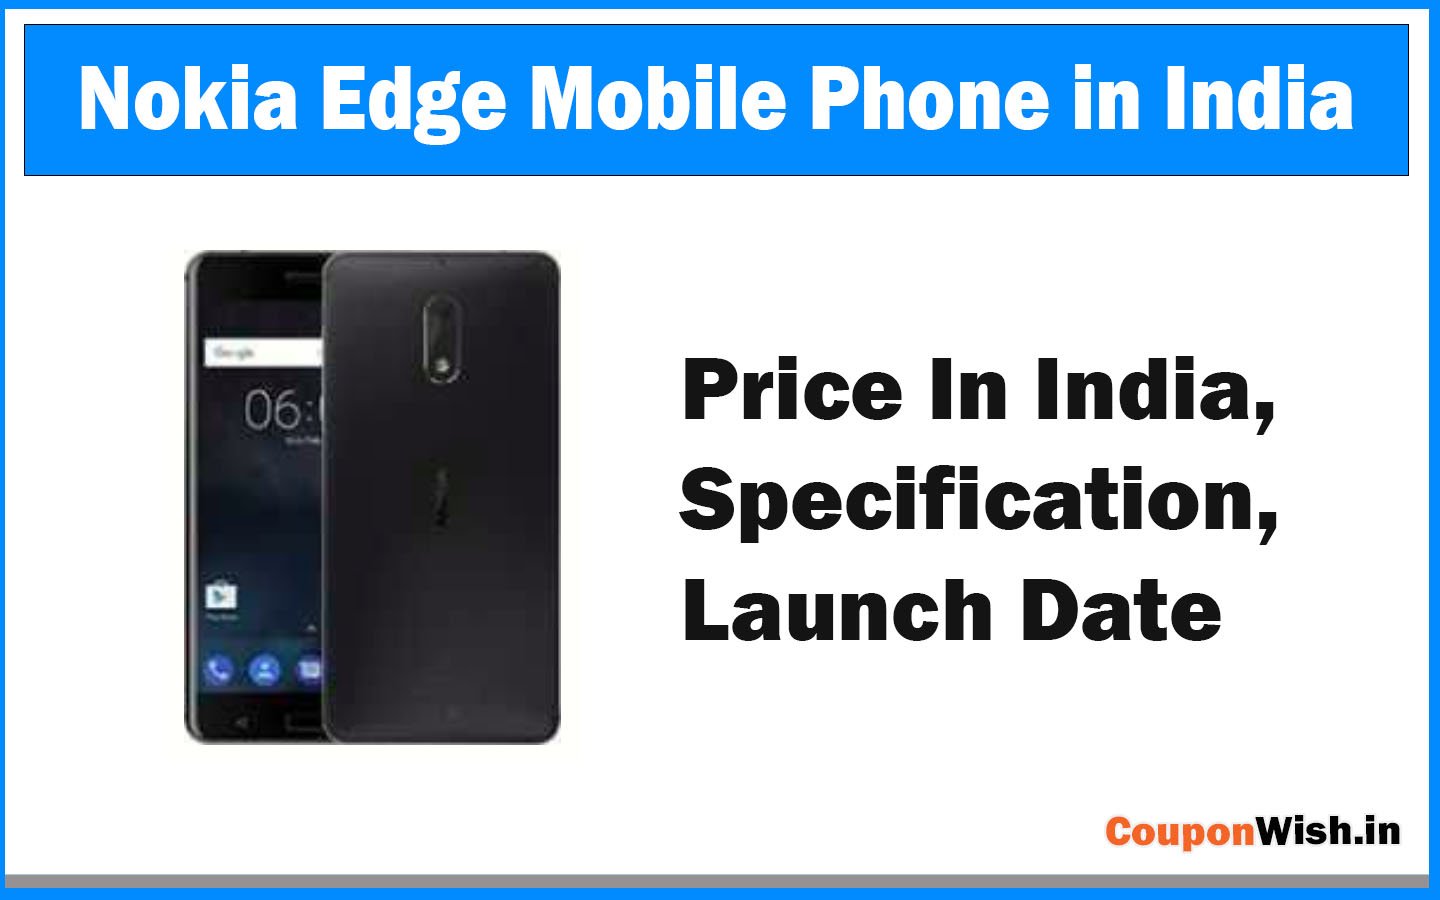 Nokia Edge: